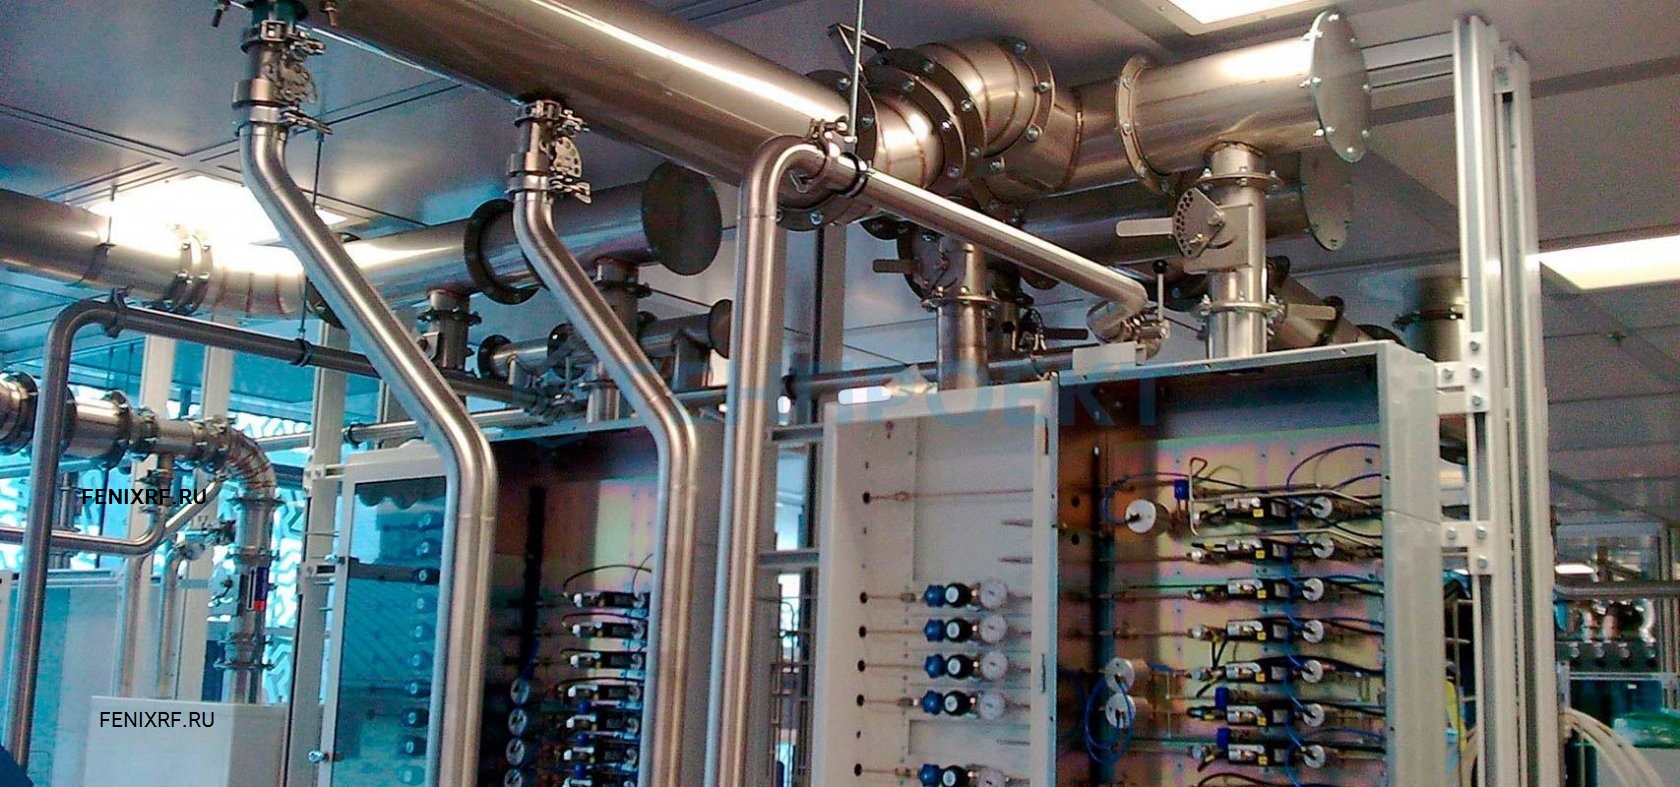 Отопление вода спб. Электроприемники систем отопления, вентиляции и кондиционирования. Автоматизация отопления и вентиляции. Инженерные системы вентиляция. Автоматизация систем вентиляции и кондиционирования.